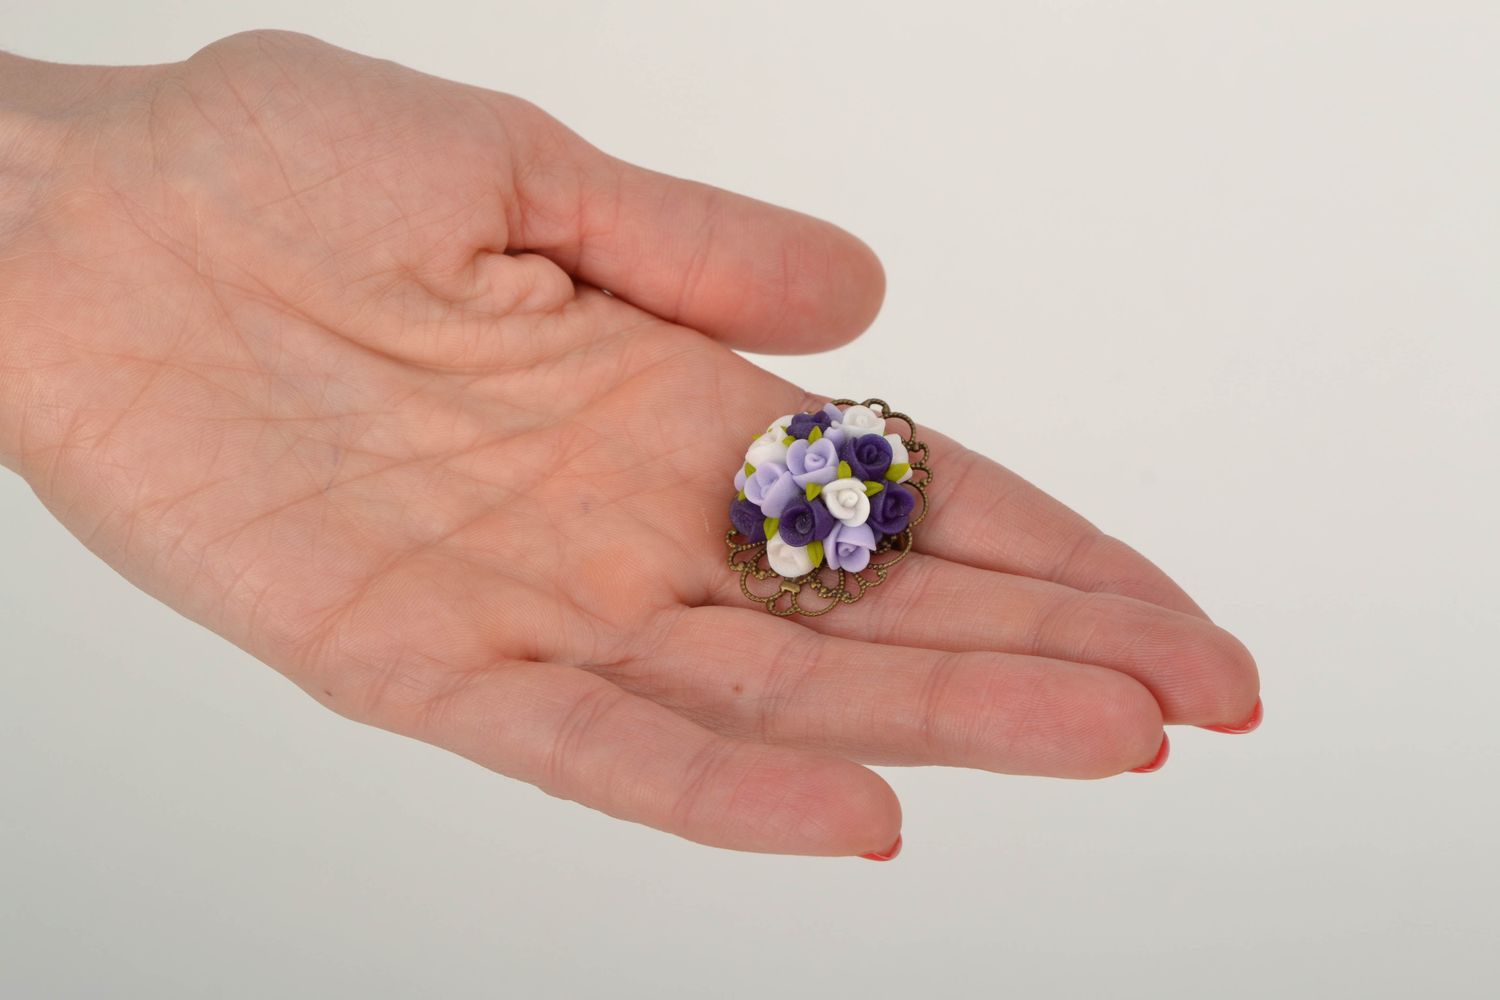 Broche artesanal con flores de arcilla polimérica foto 2